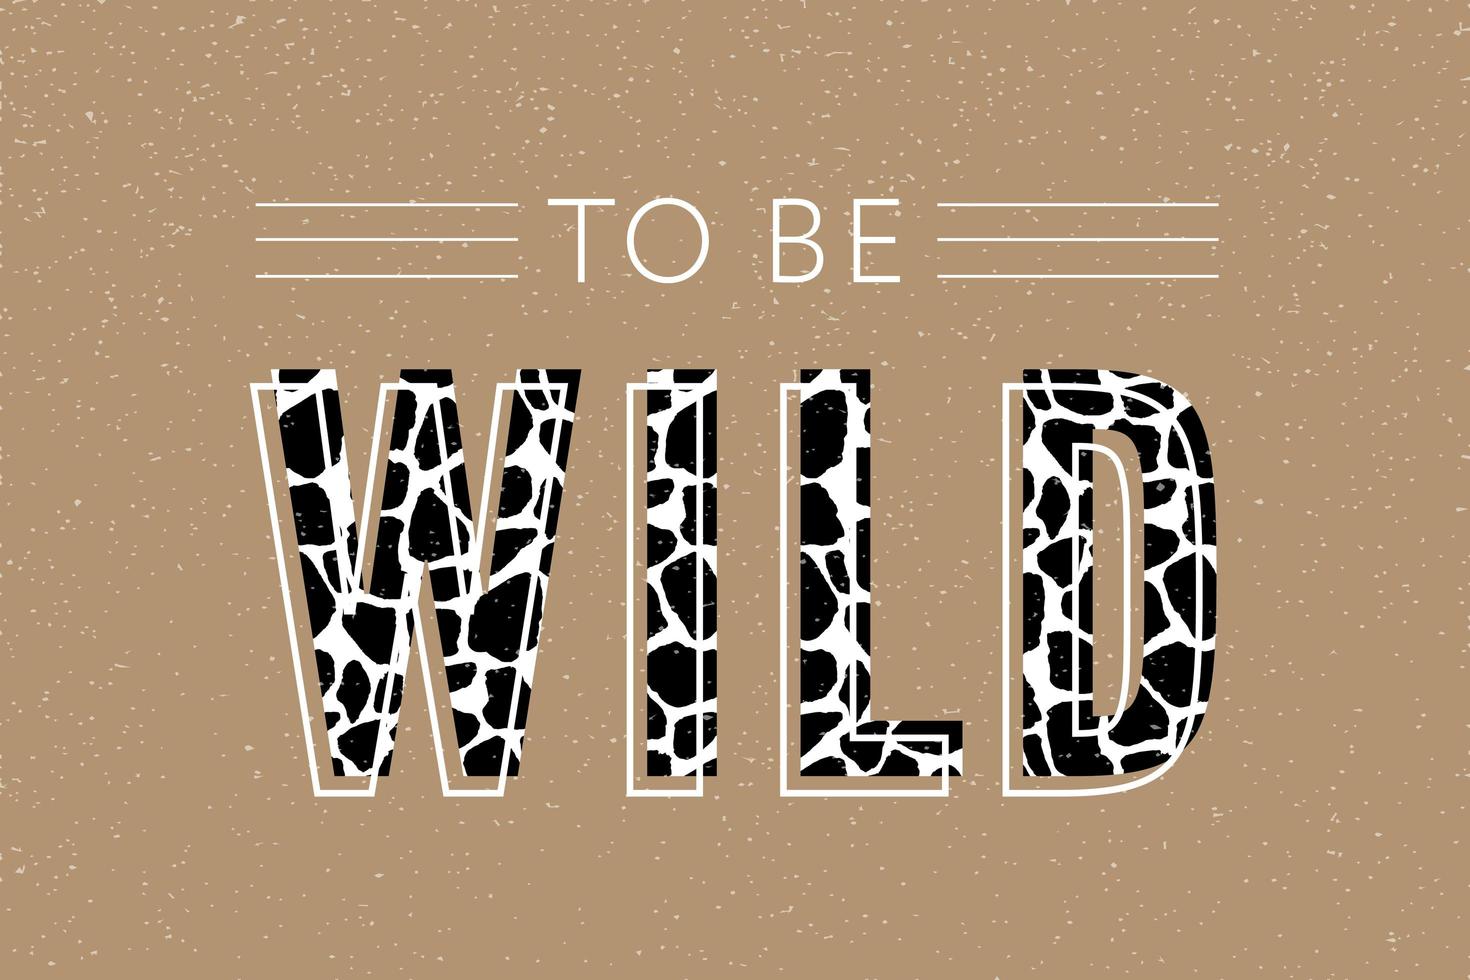 texto selvagem decorativo com padrão girafa, moda, cartão e slogan de impressão de pôster vetor